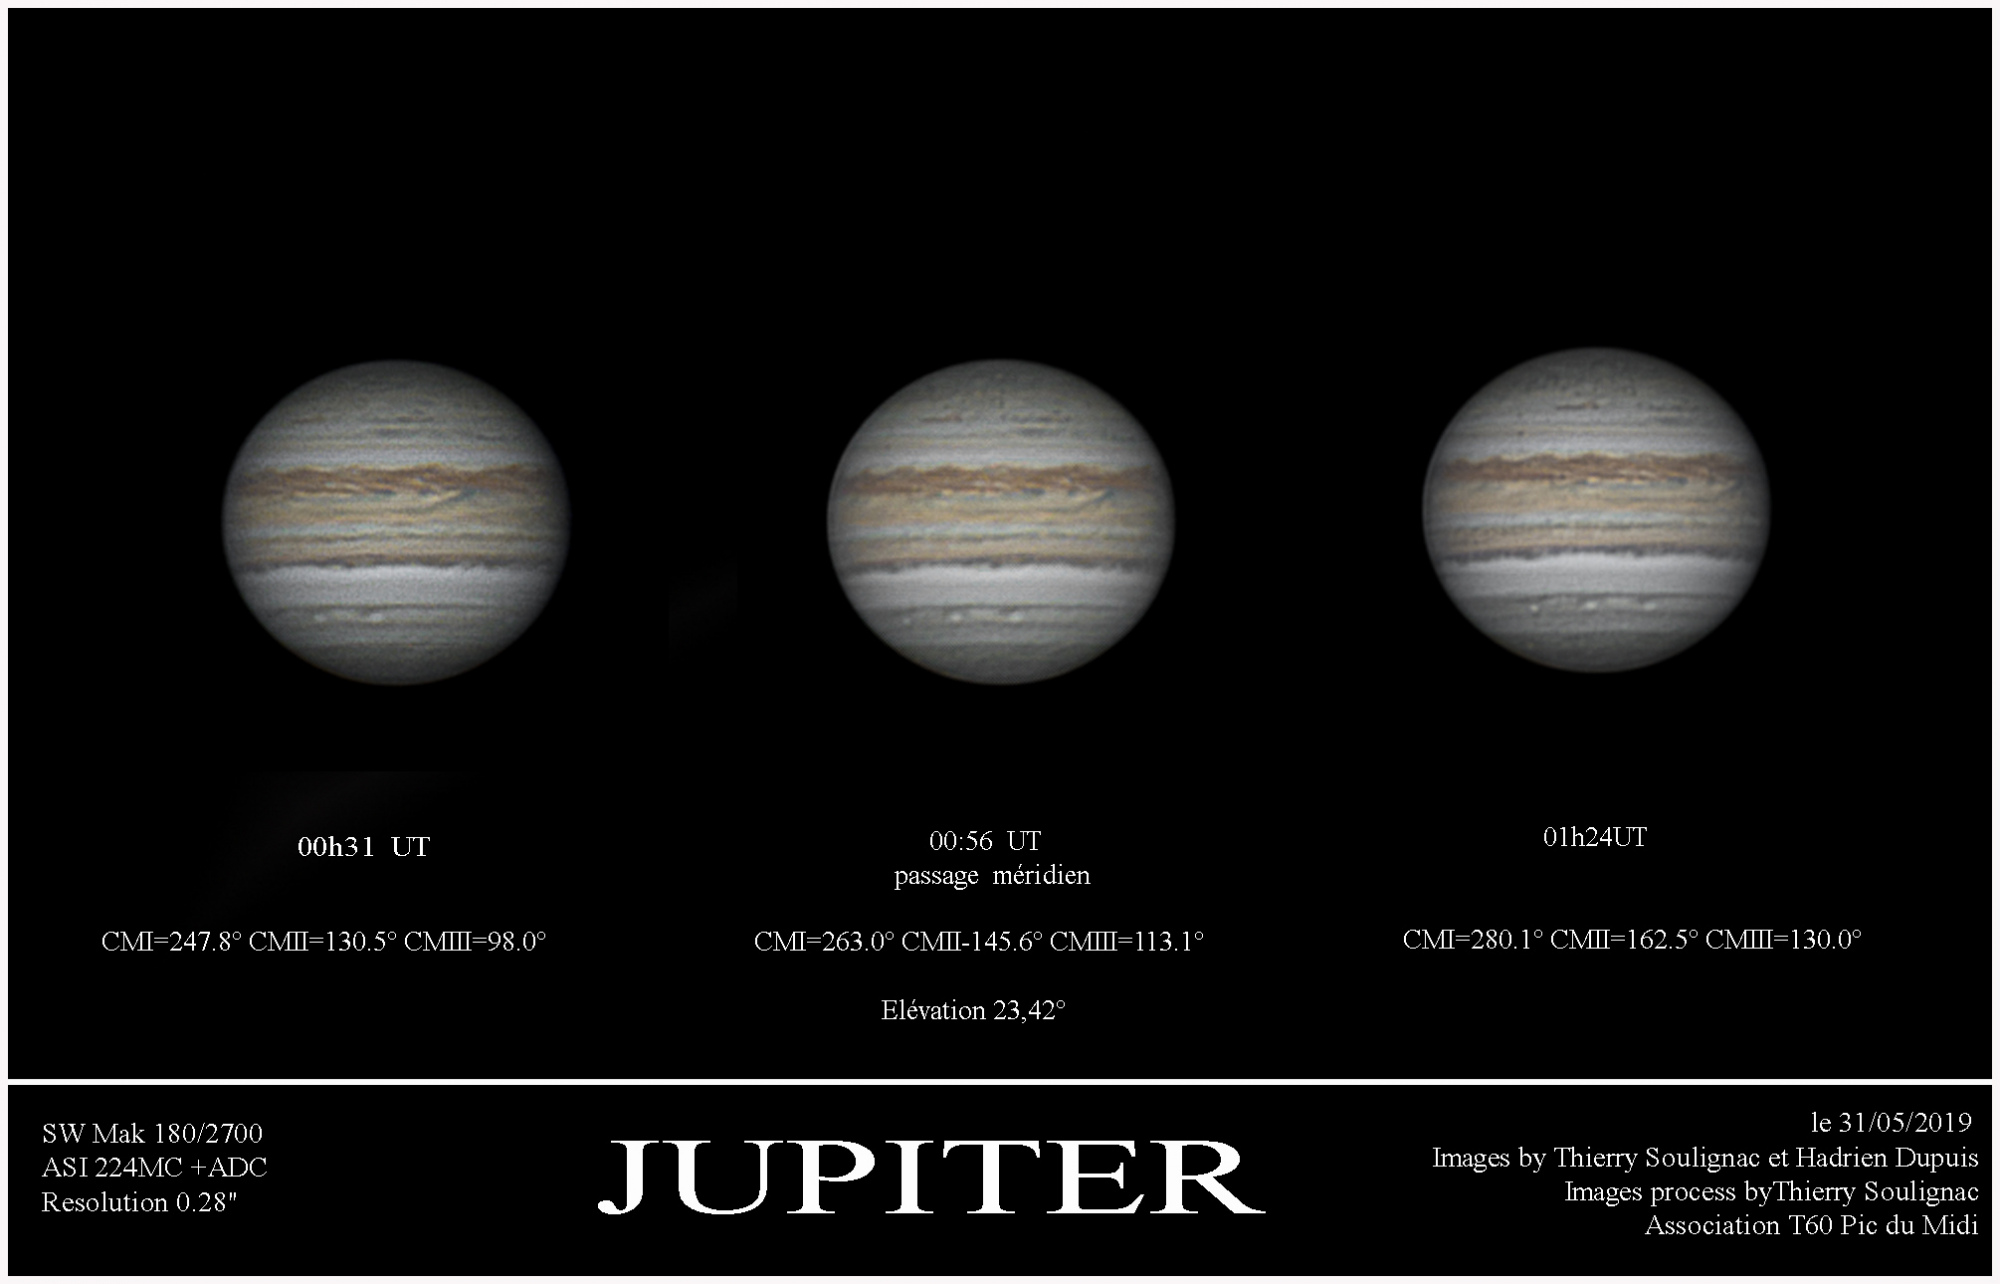 presentation Jupiter 31-05-2019.jpg